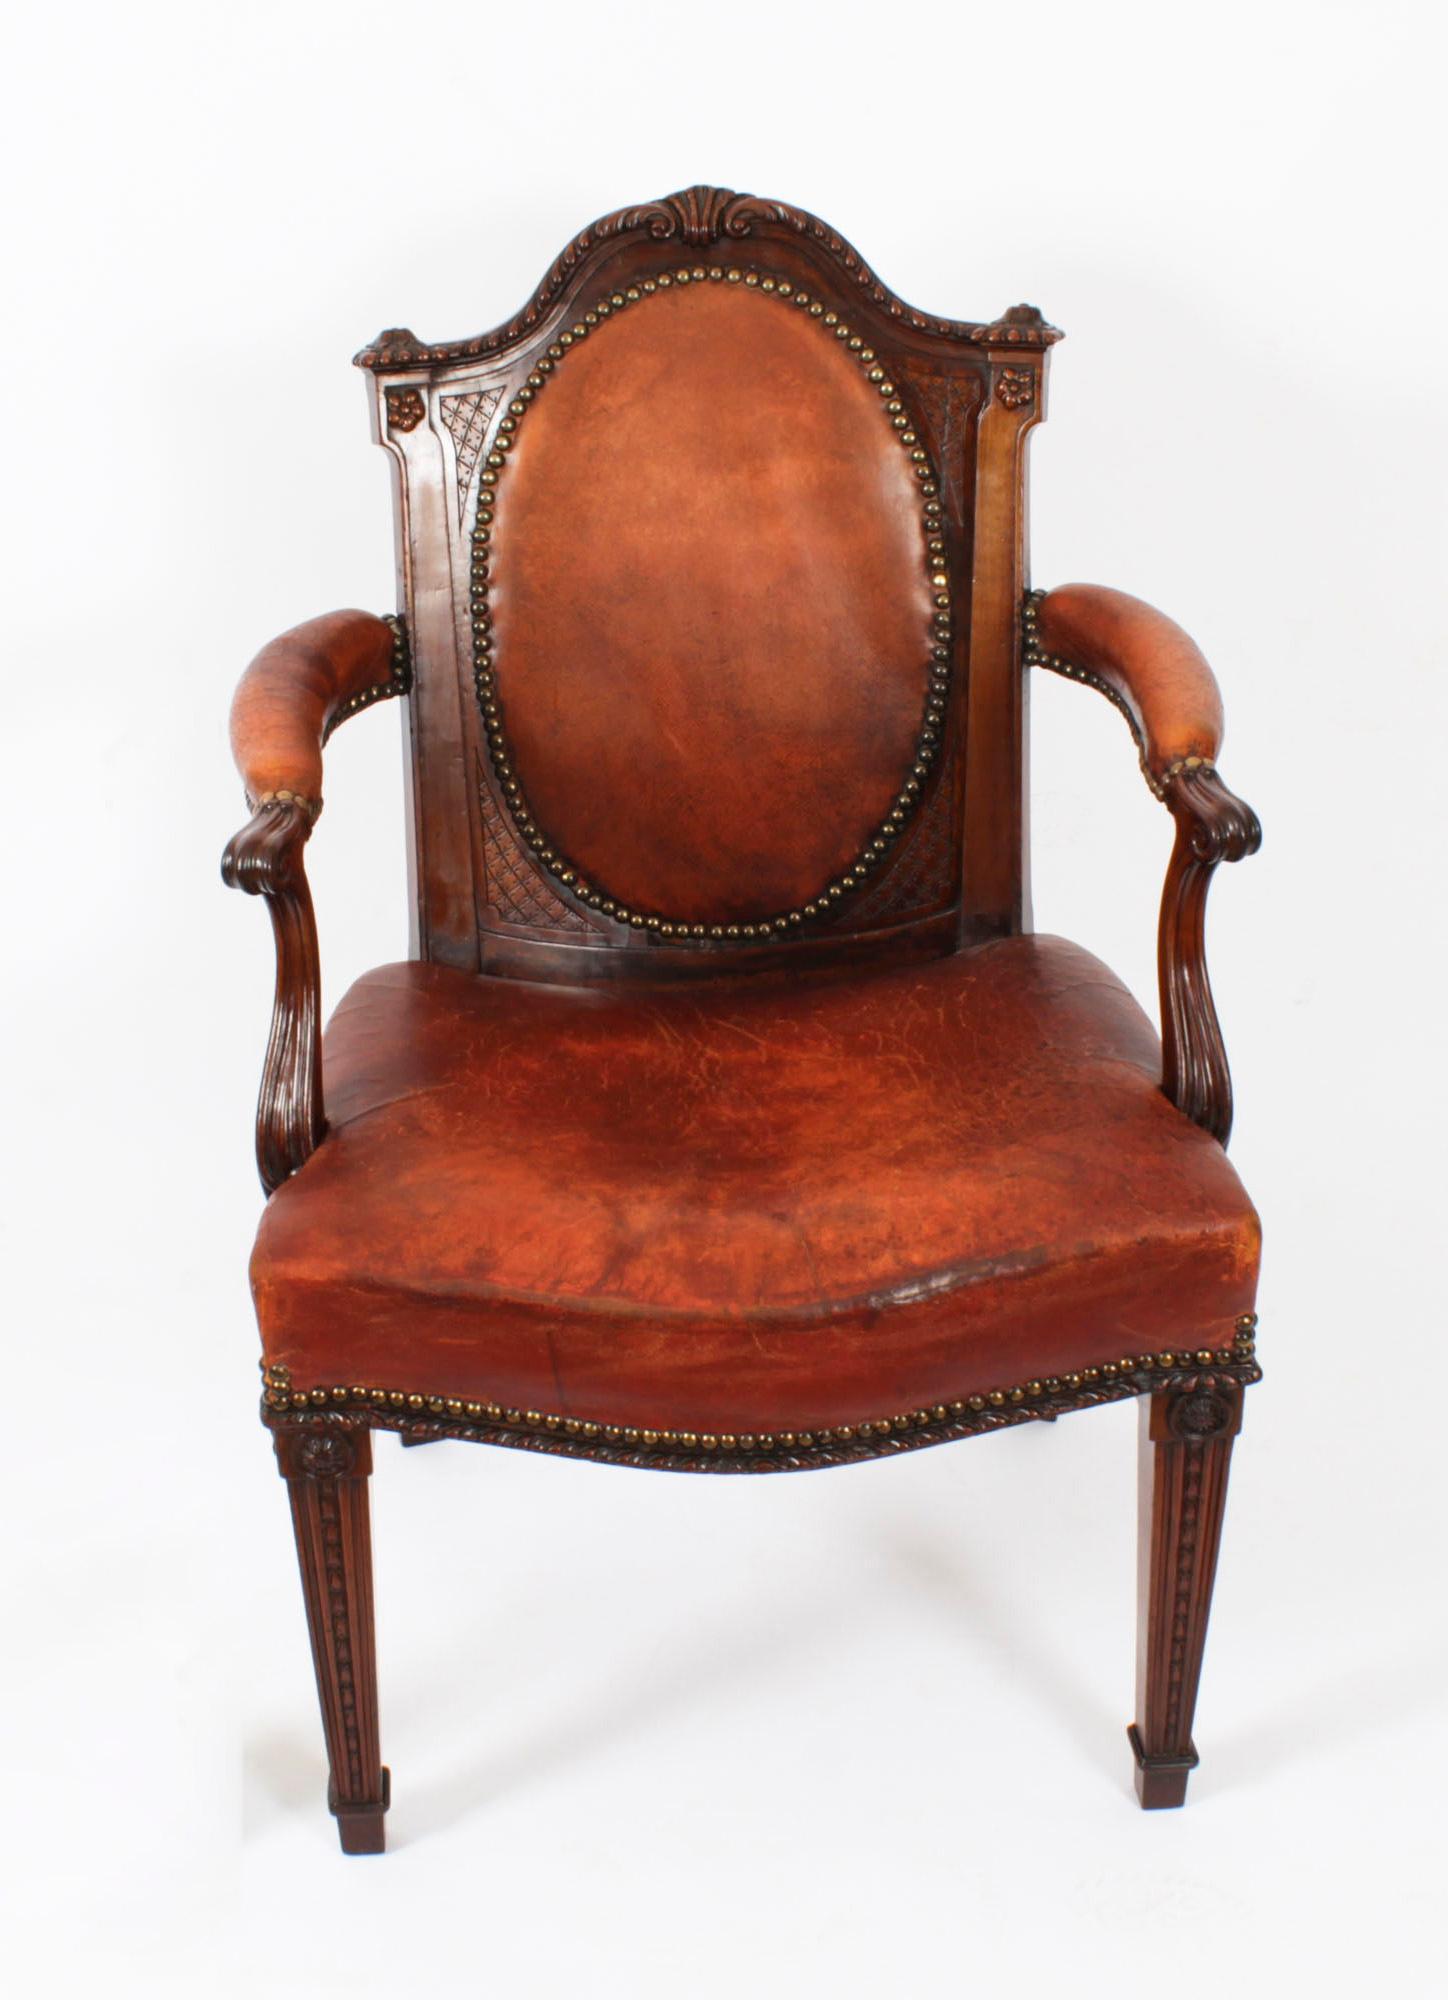 Il s'agit d'un fantastique fauteuil de bureau victorien en acajou, datant d'environ 1860.

Fabriqué en acajou superbement sculpté, il est doté d'une assise rembourrée et d'un dossier ovale capitonné qui présente son somptueux cuir caramel